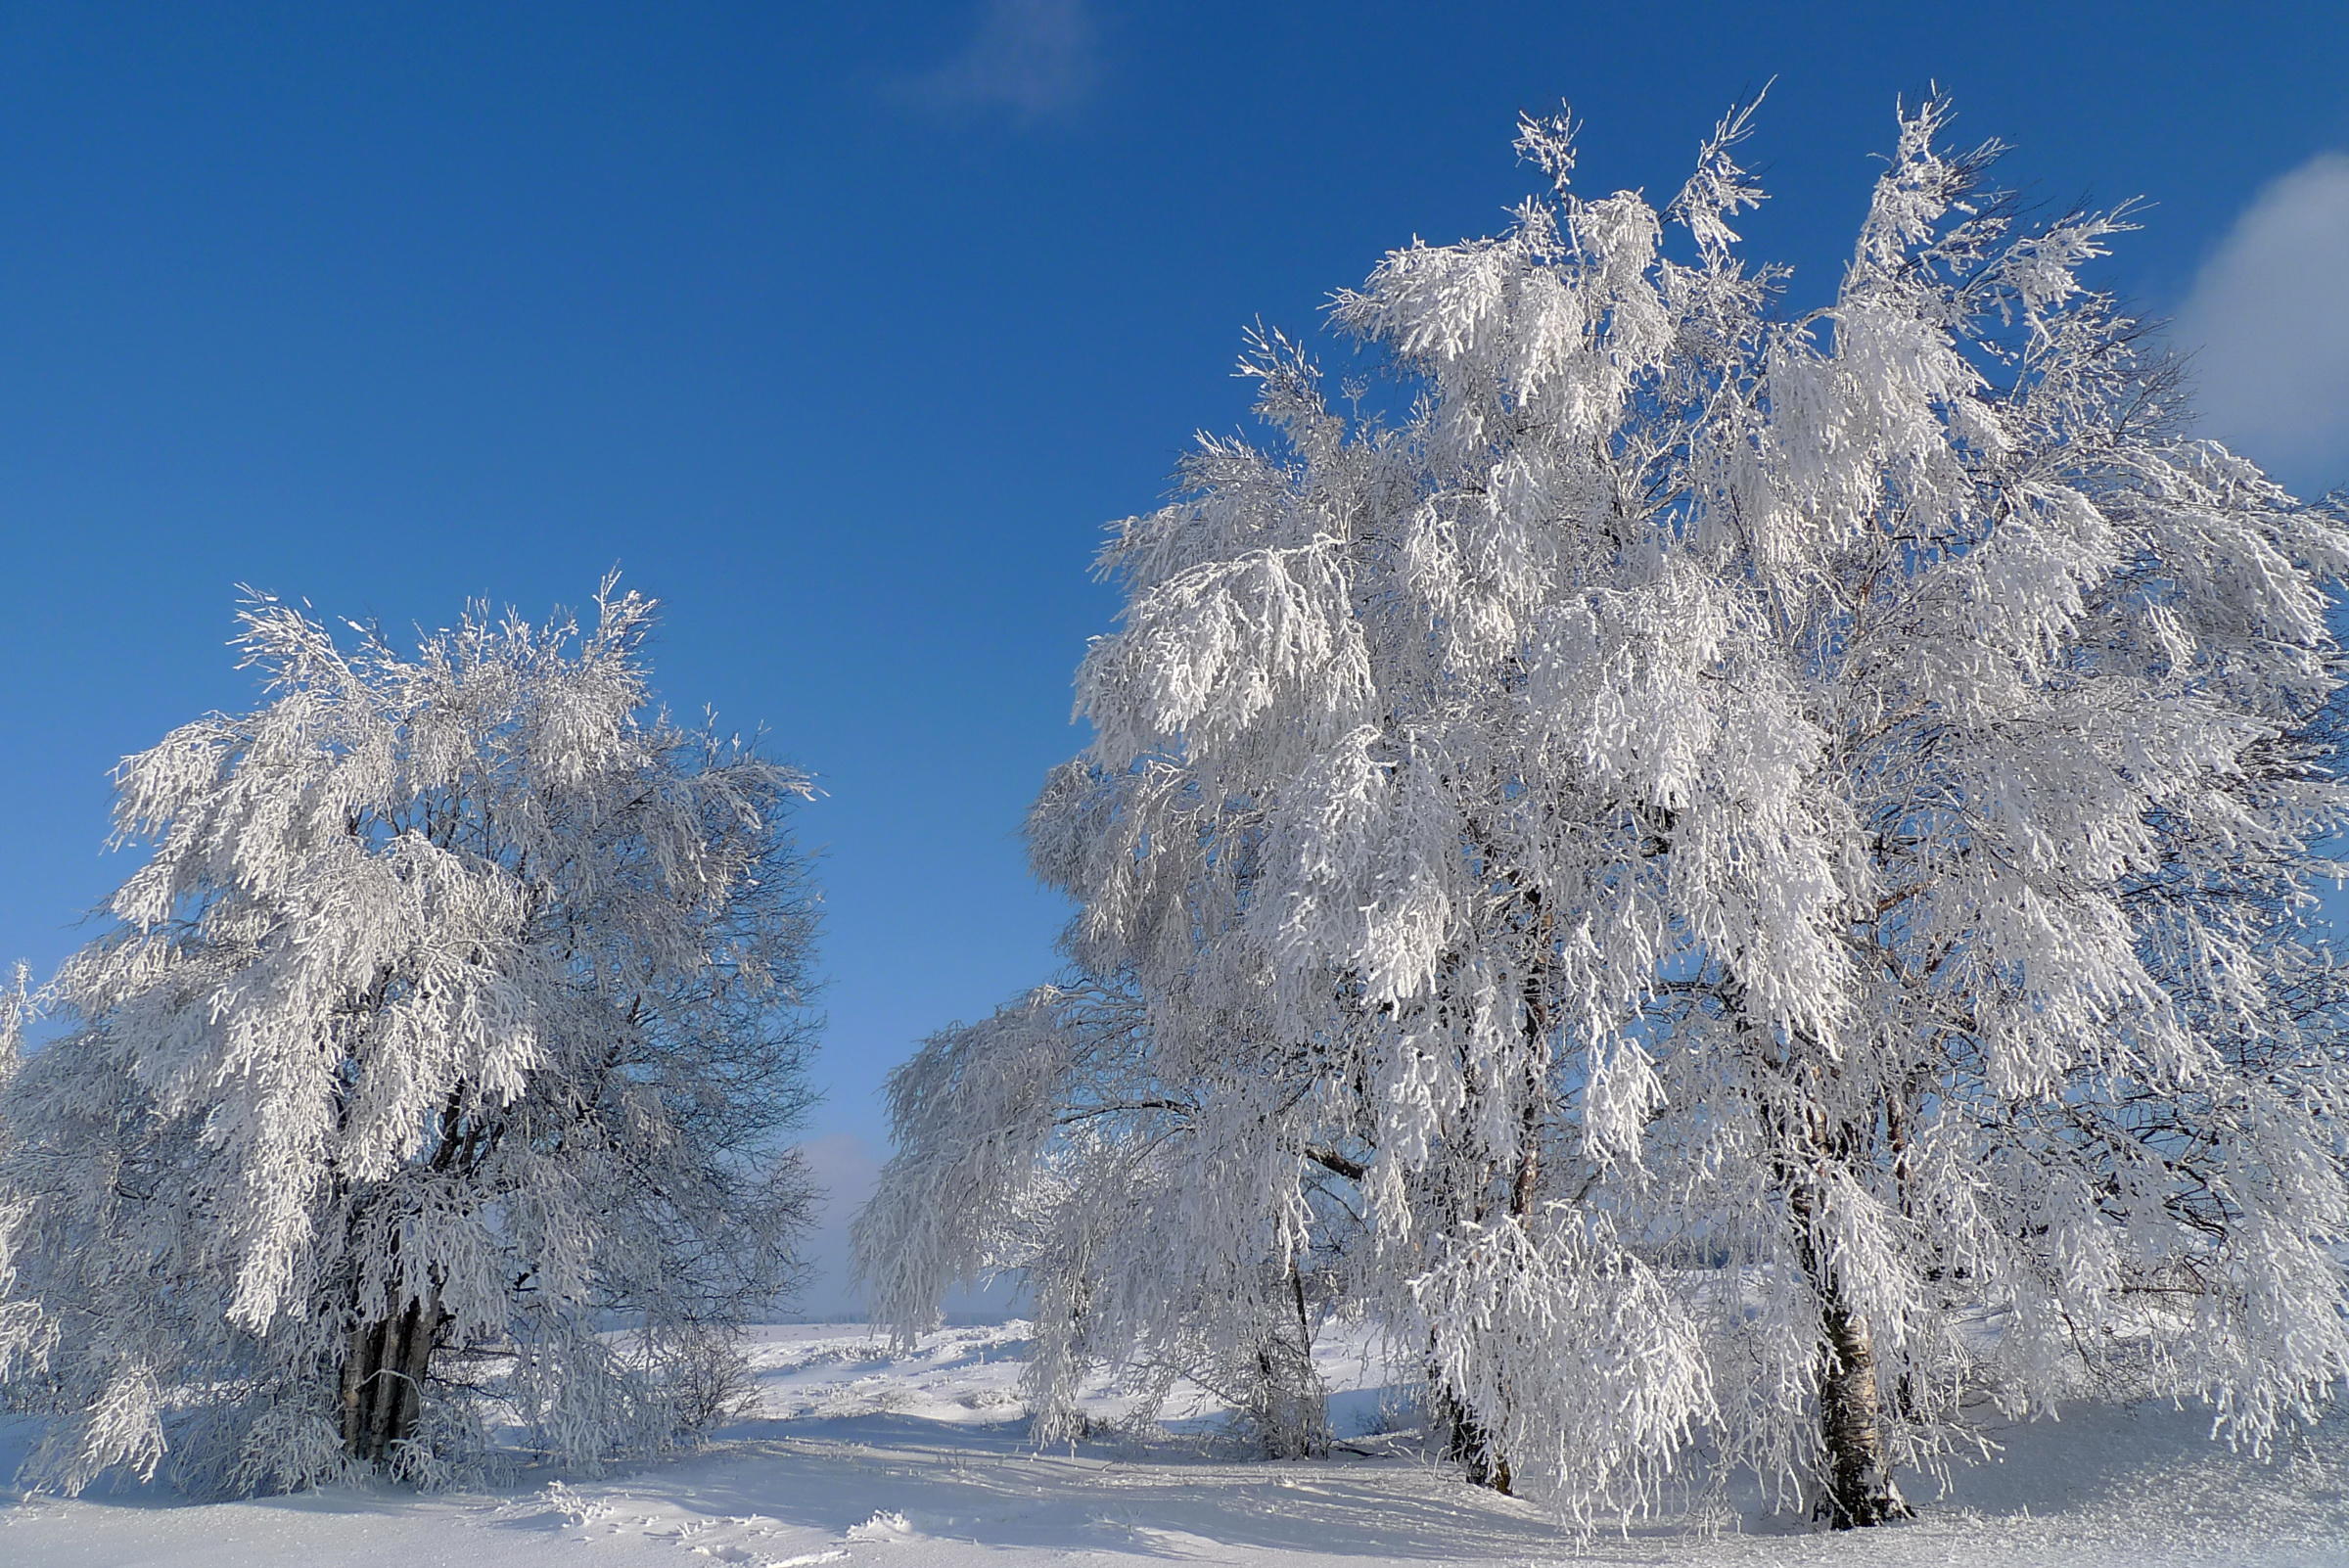 Фото бесплатно ветки в снегу, снег на ветках, пейзаж